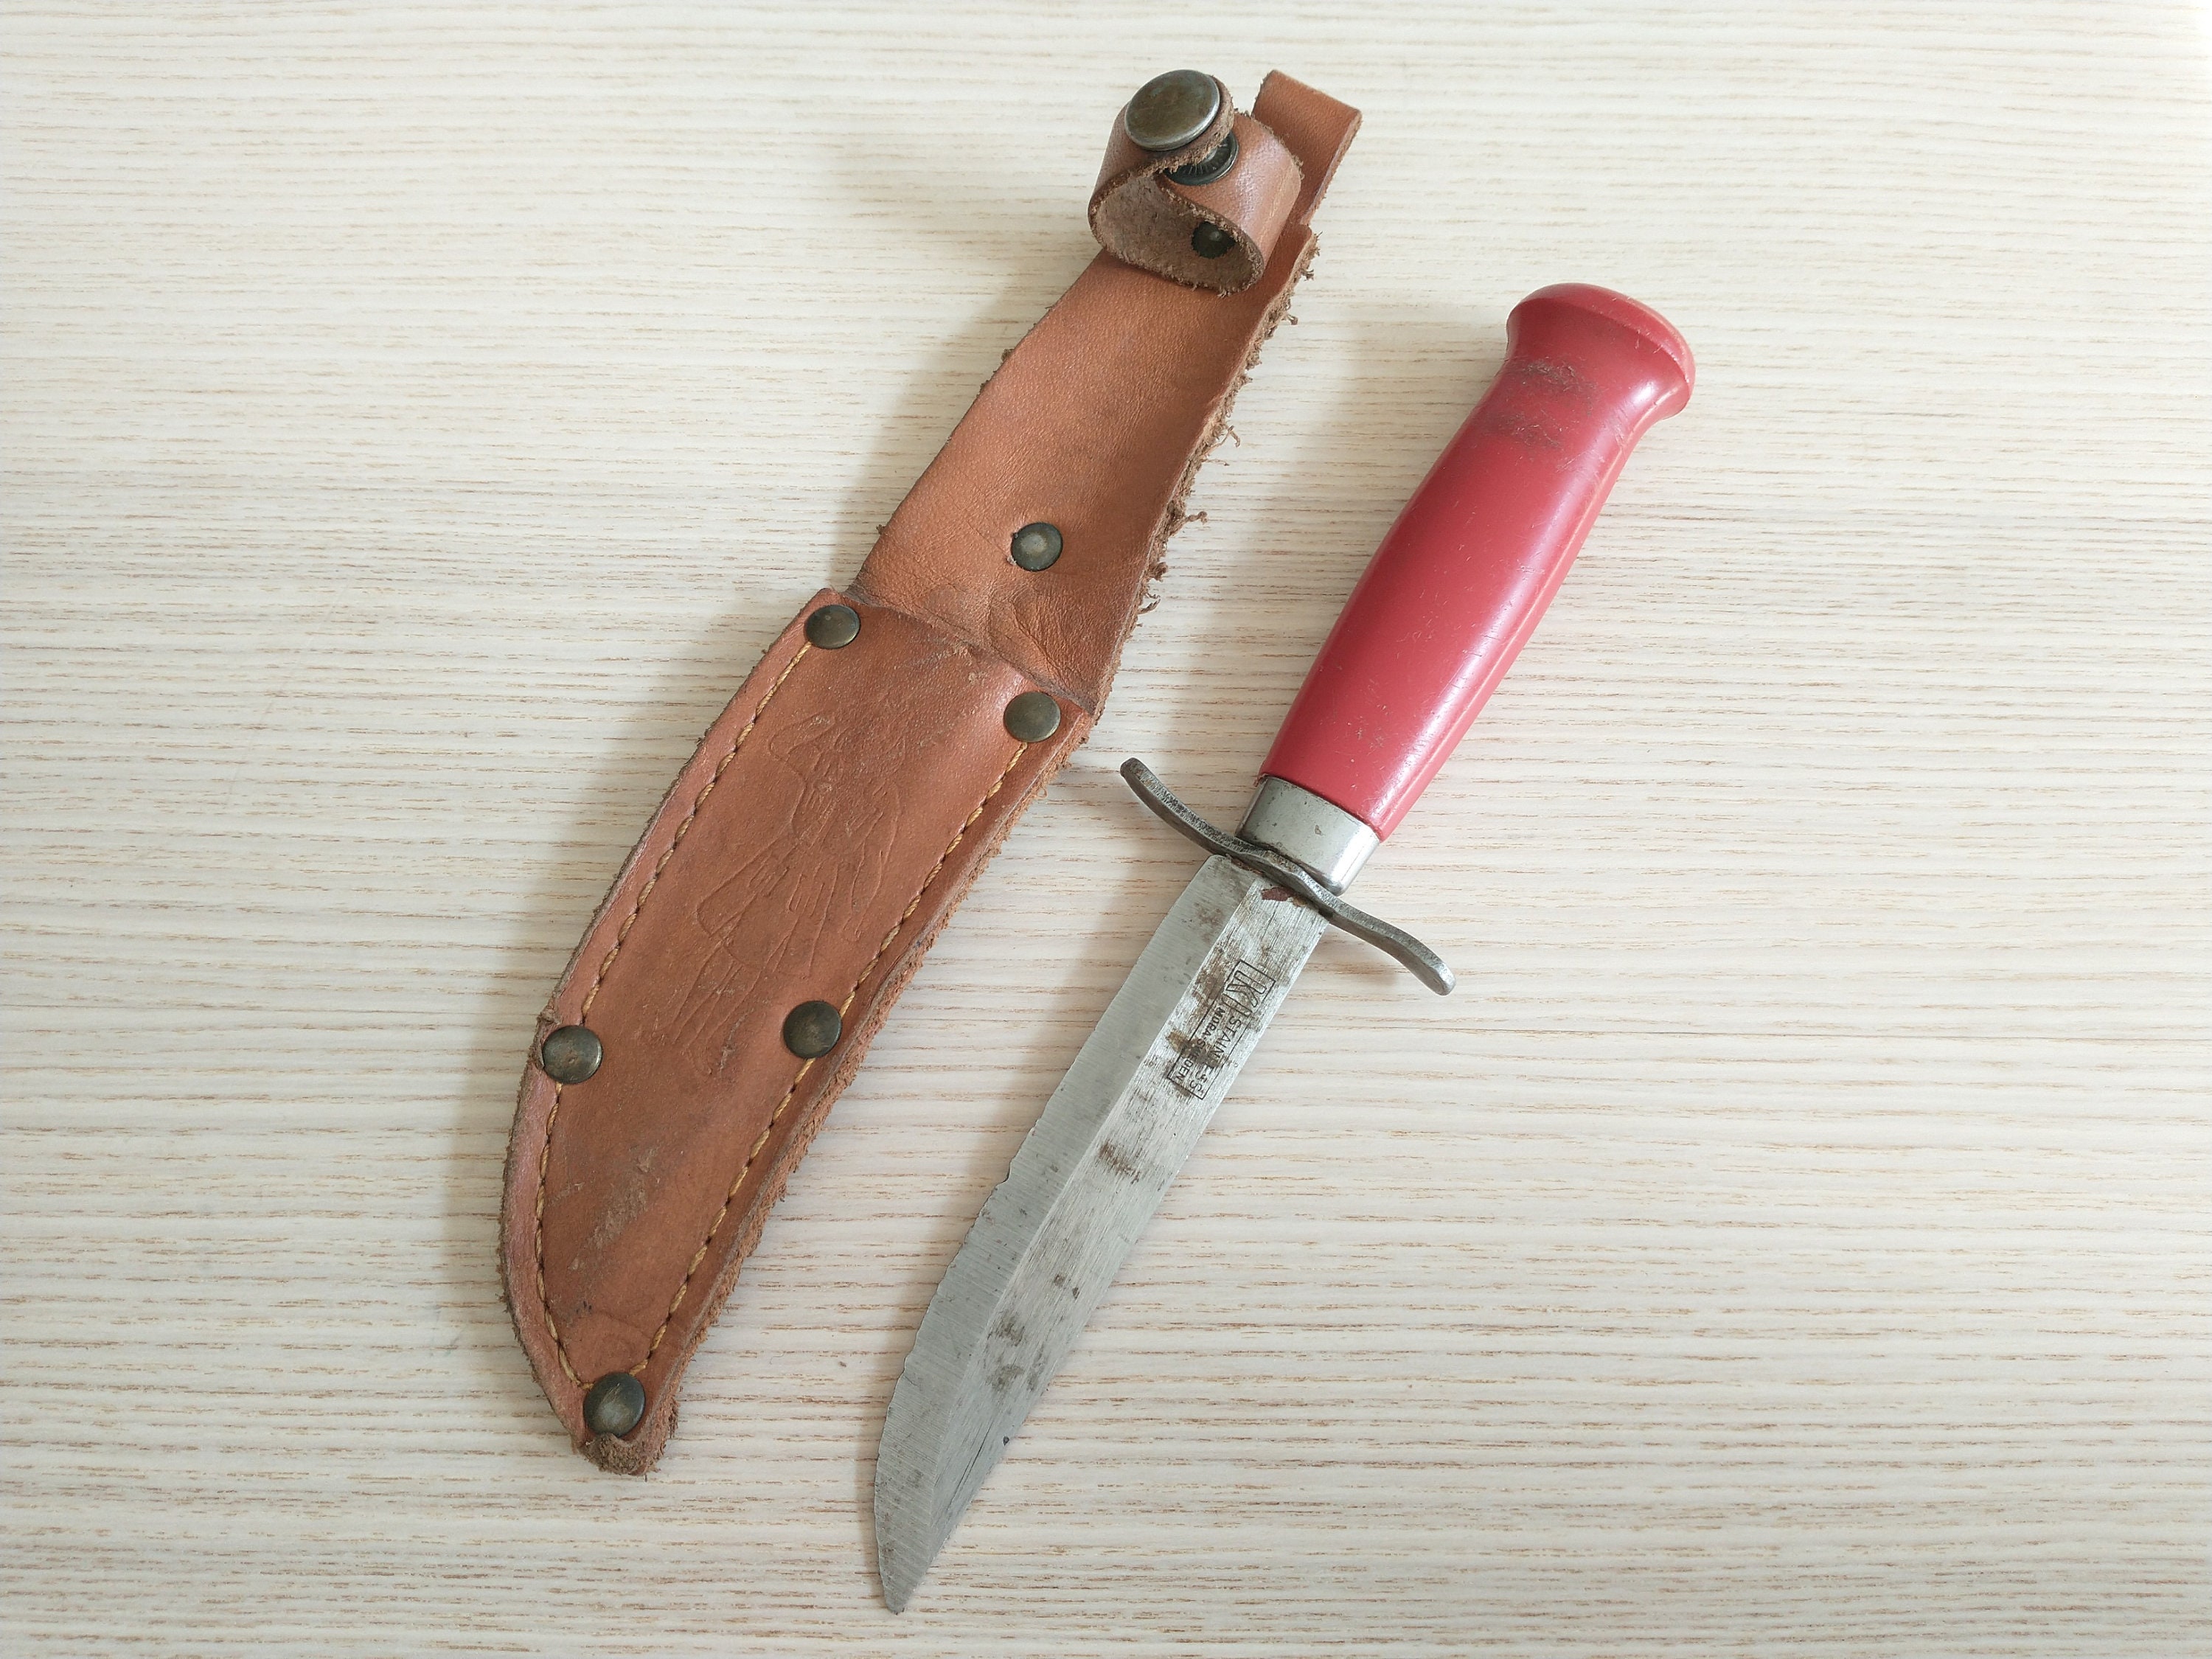 Frosts Mora Laminated Steel Vintage Knife, Made in Sweden, Original Sheath